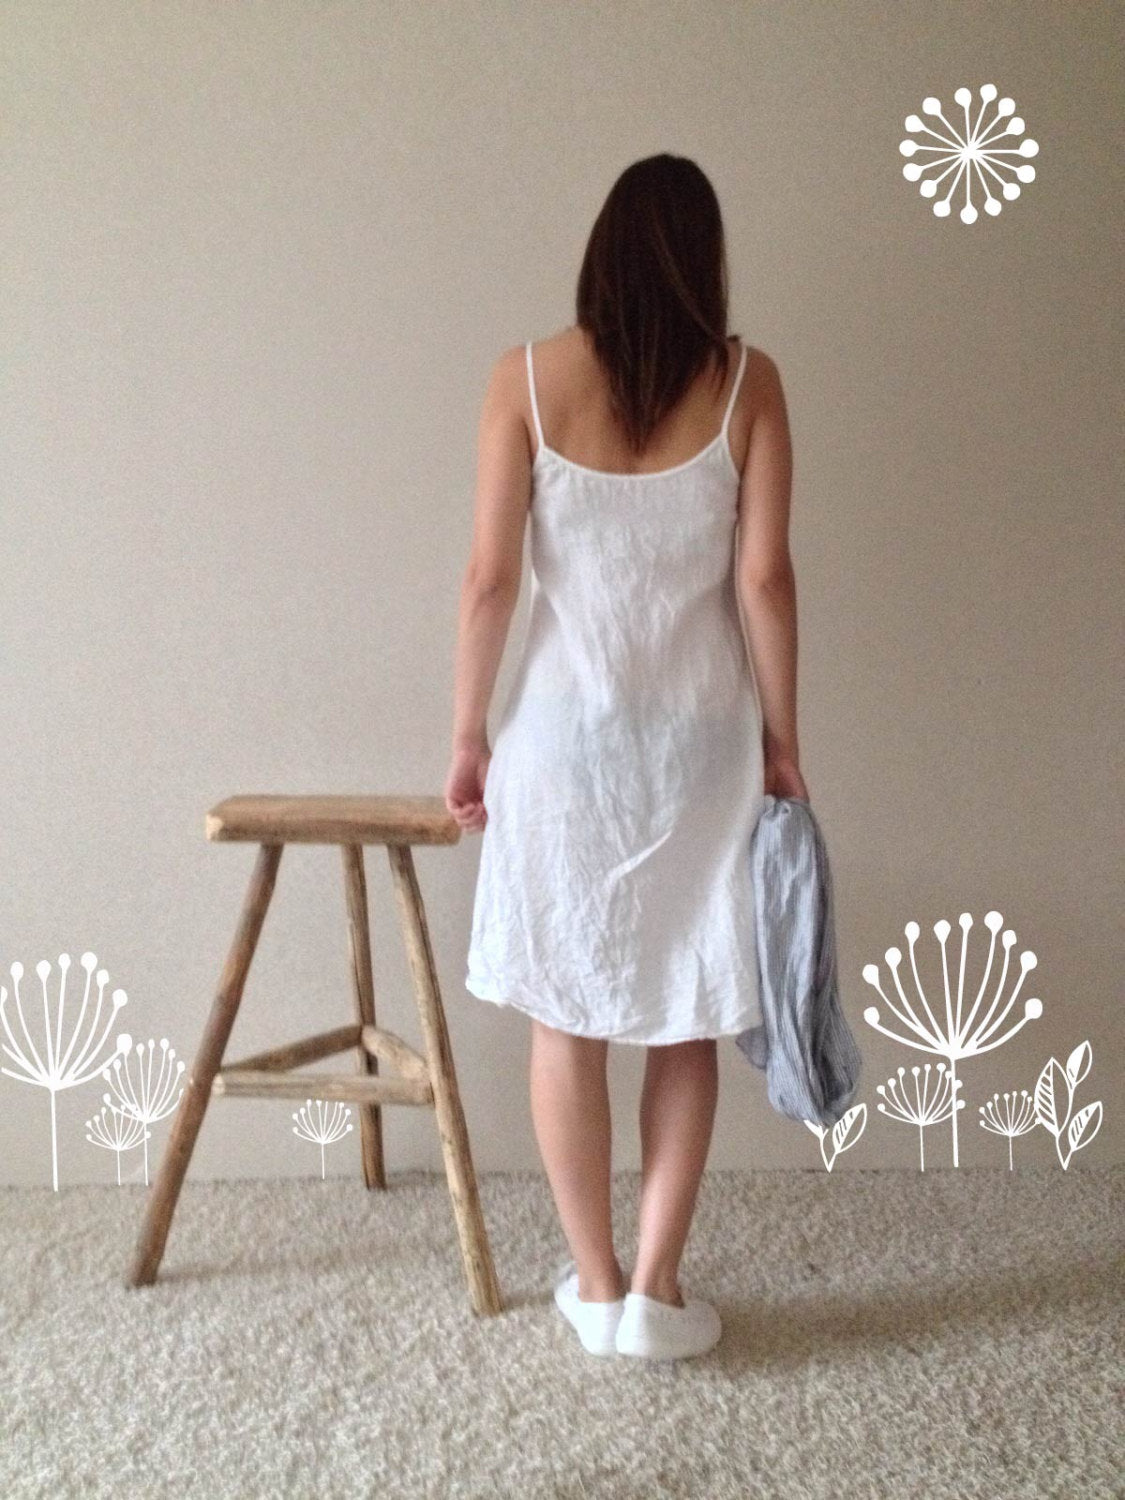 Linen Slip Dress, Simple Lovely Off White Linen Base Layer Dress